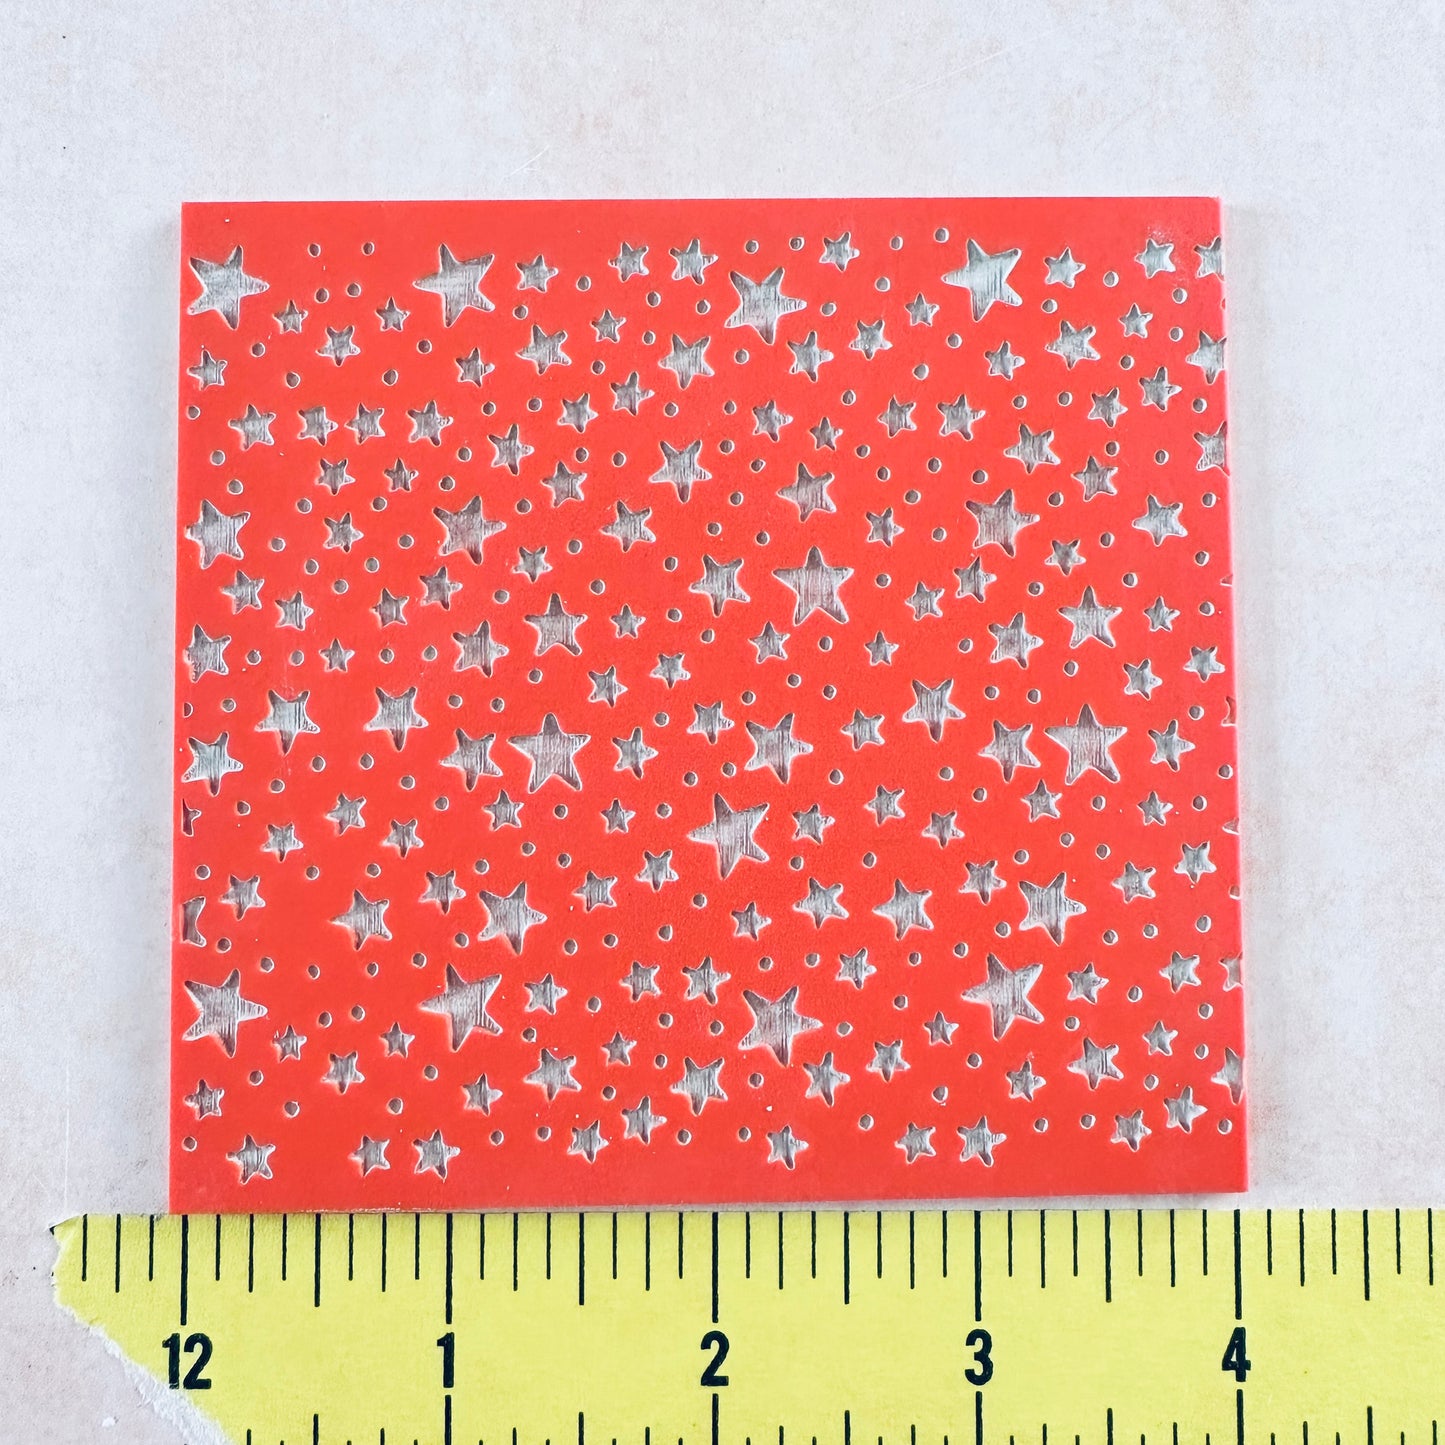 Starry Stars Celestial Rubber Stamp polymer clay Texture Sheet Mat Halloween